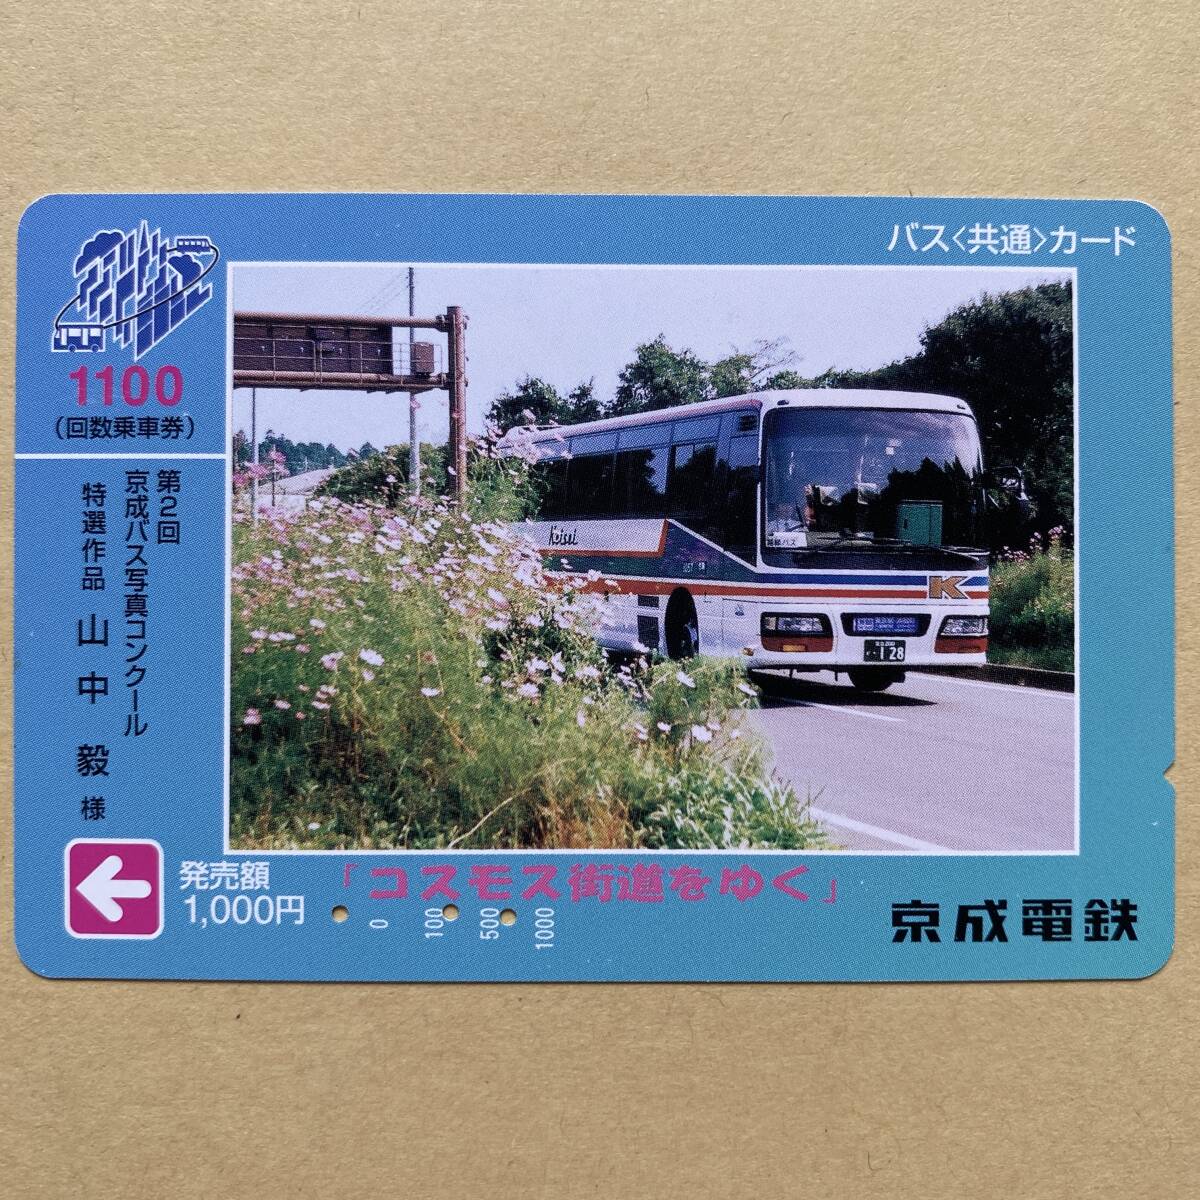 [ использованный ] bus card столица . электро- металлический no. 2 раз столица . автобус фотография темно синий прохладный специальный отбор произведение [ Cosmos улица дорога ...]